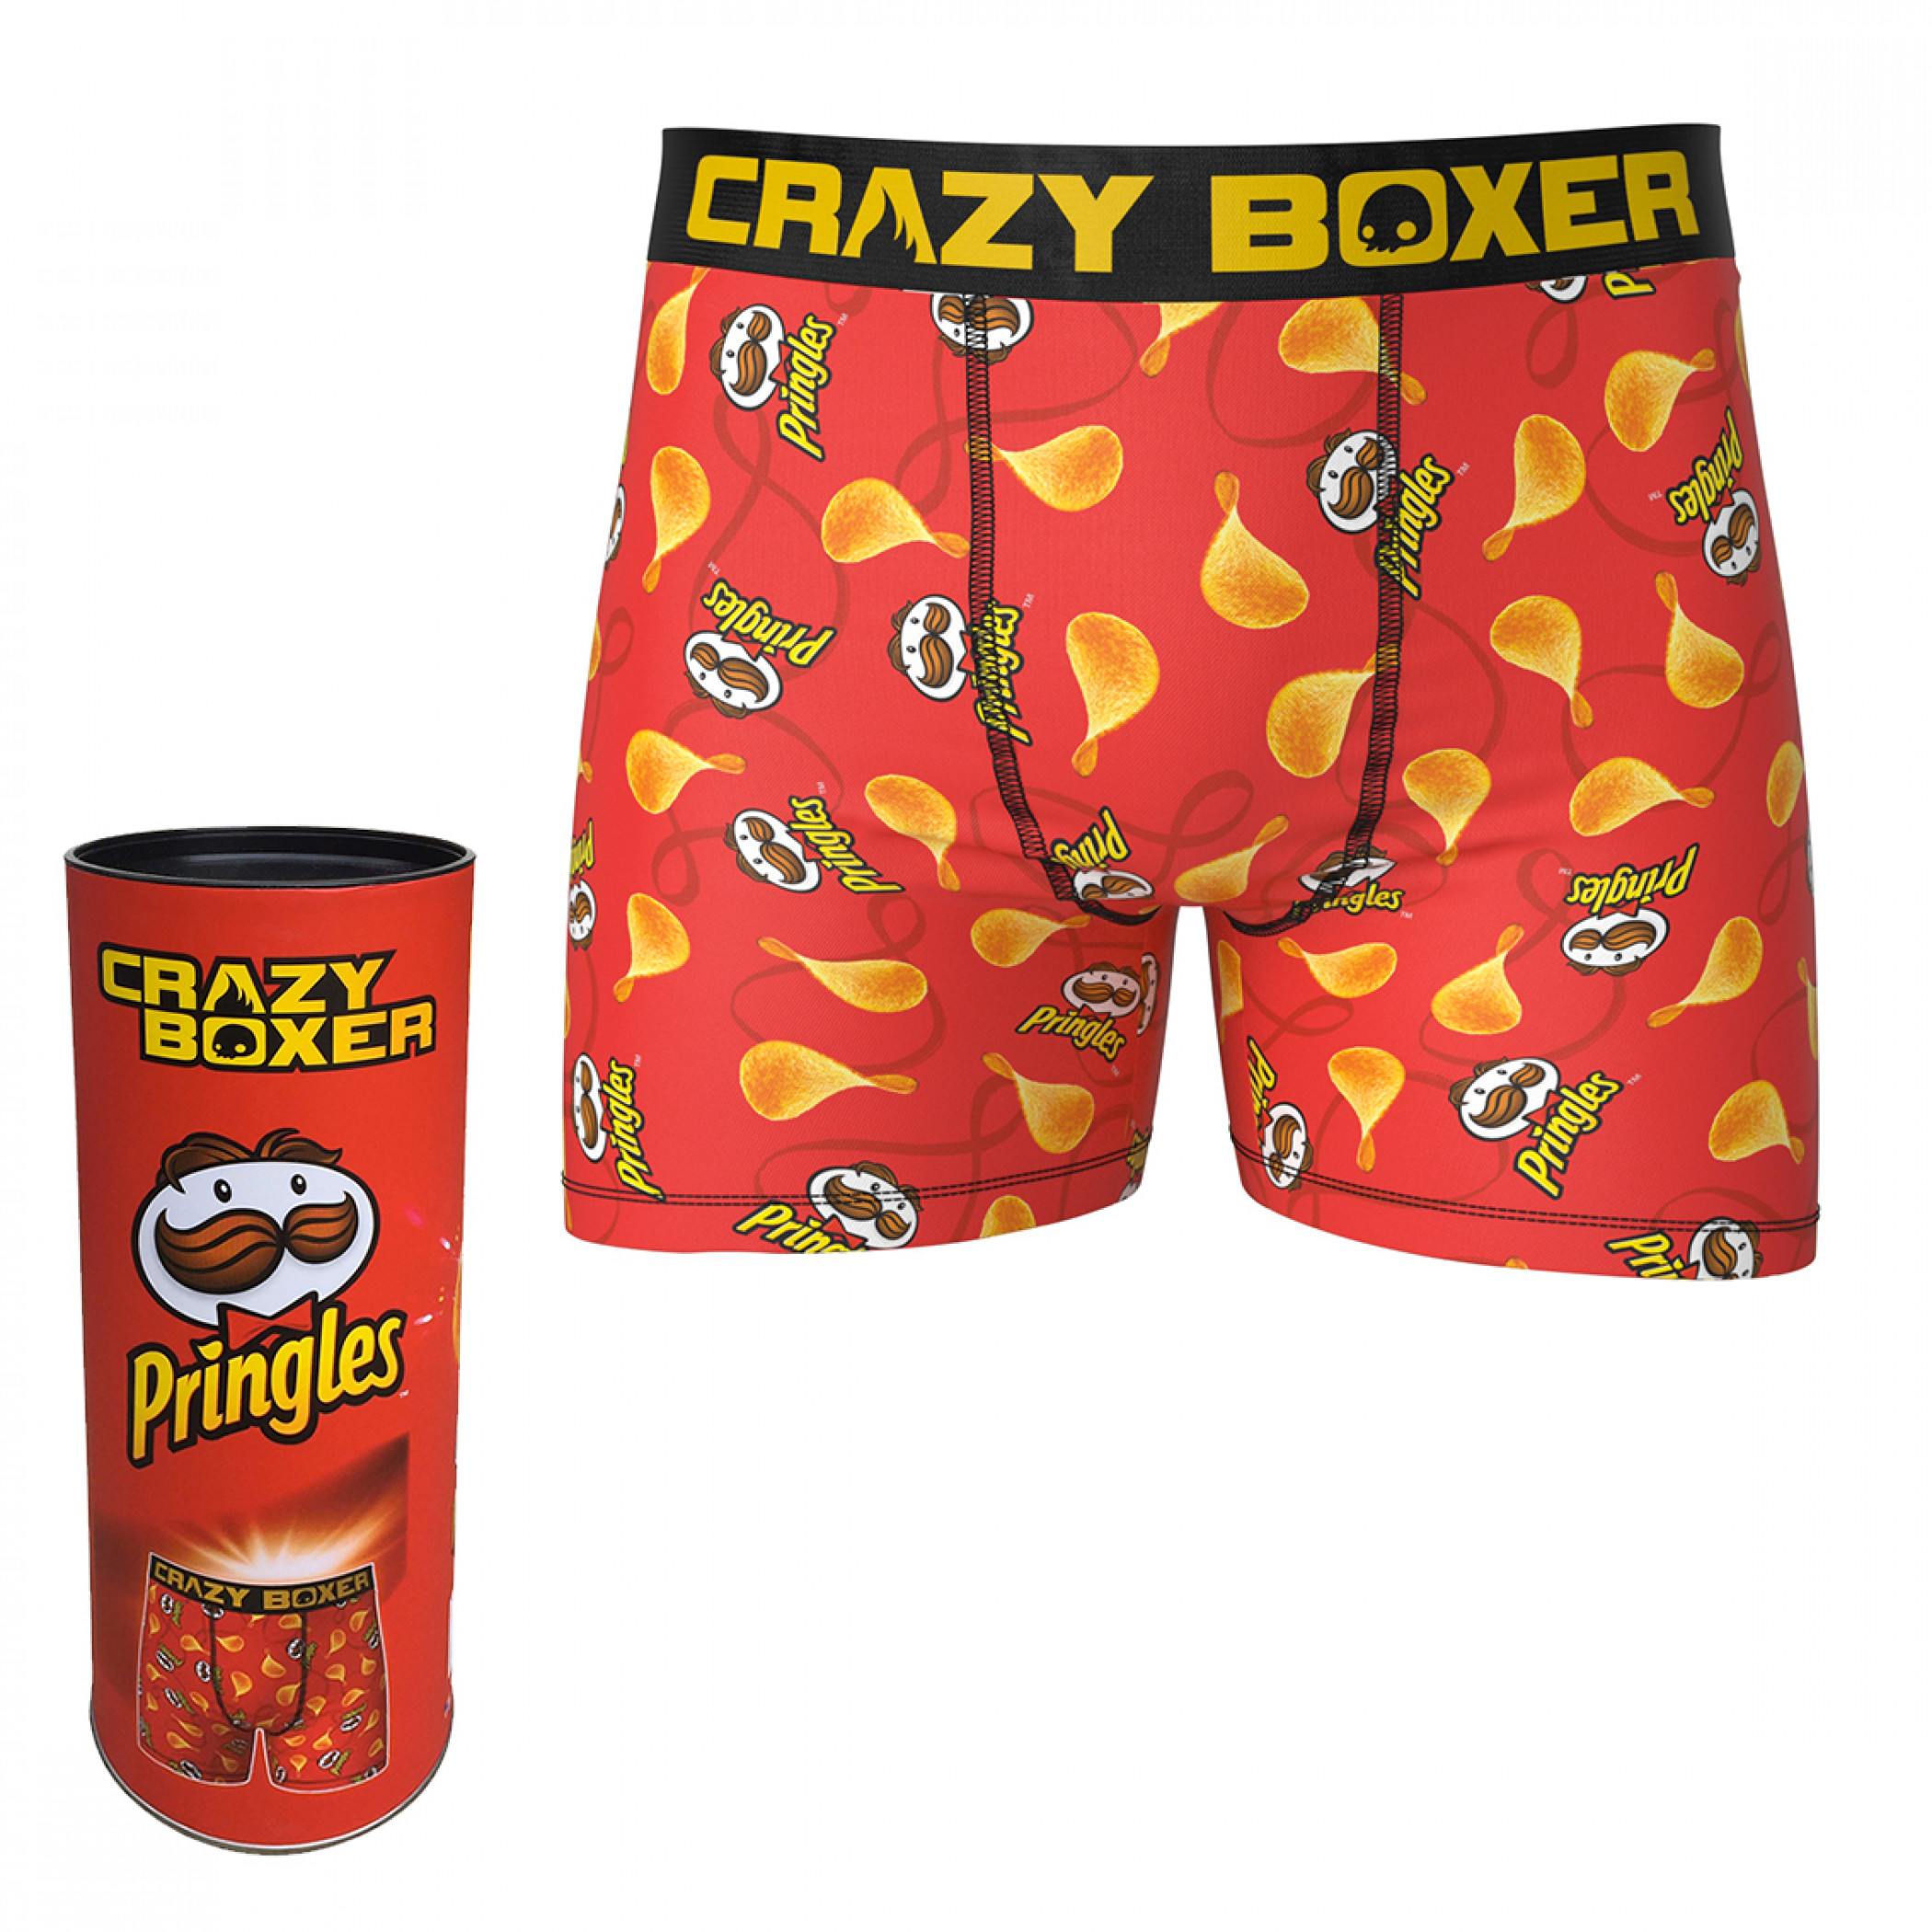 Pringles Chips Crazy Boxer Briefs in Pringles Tube